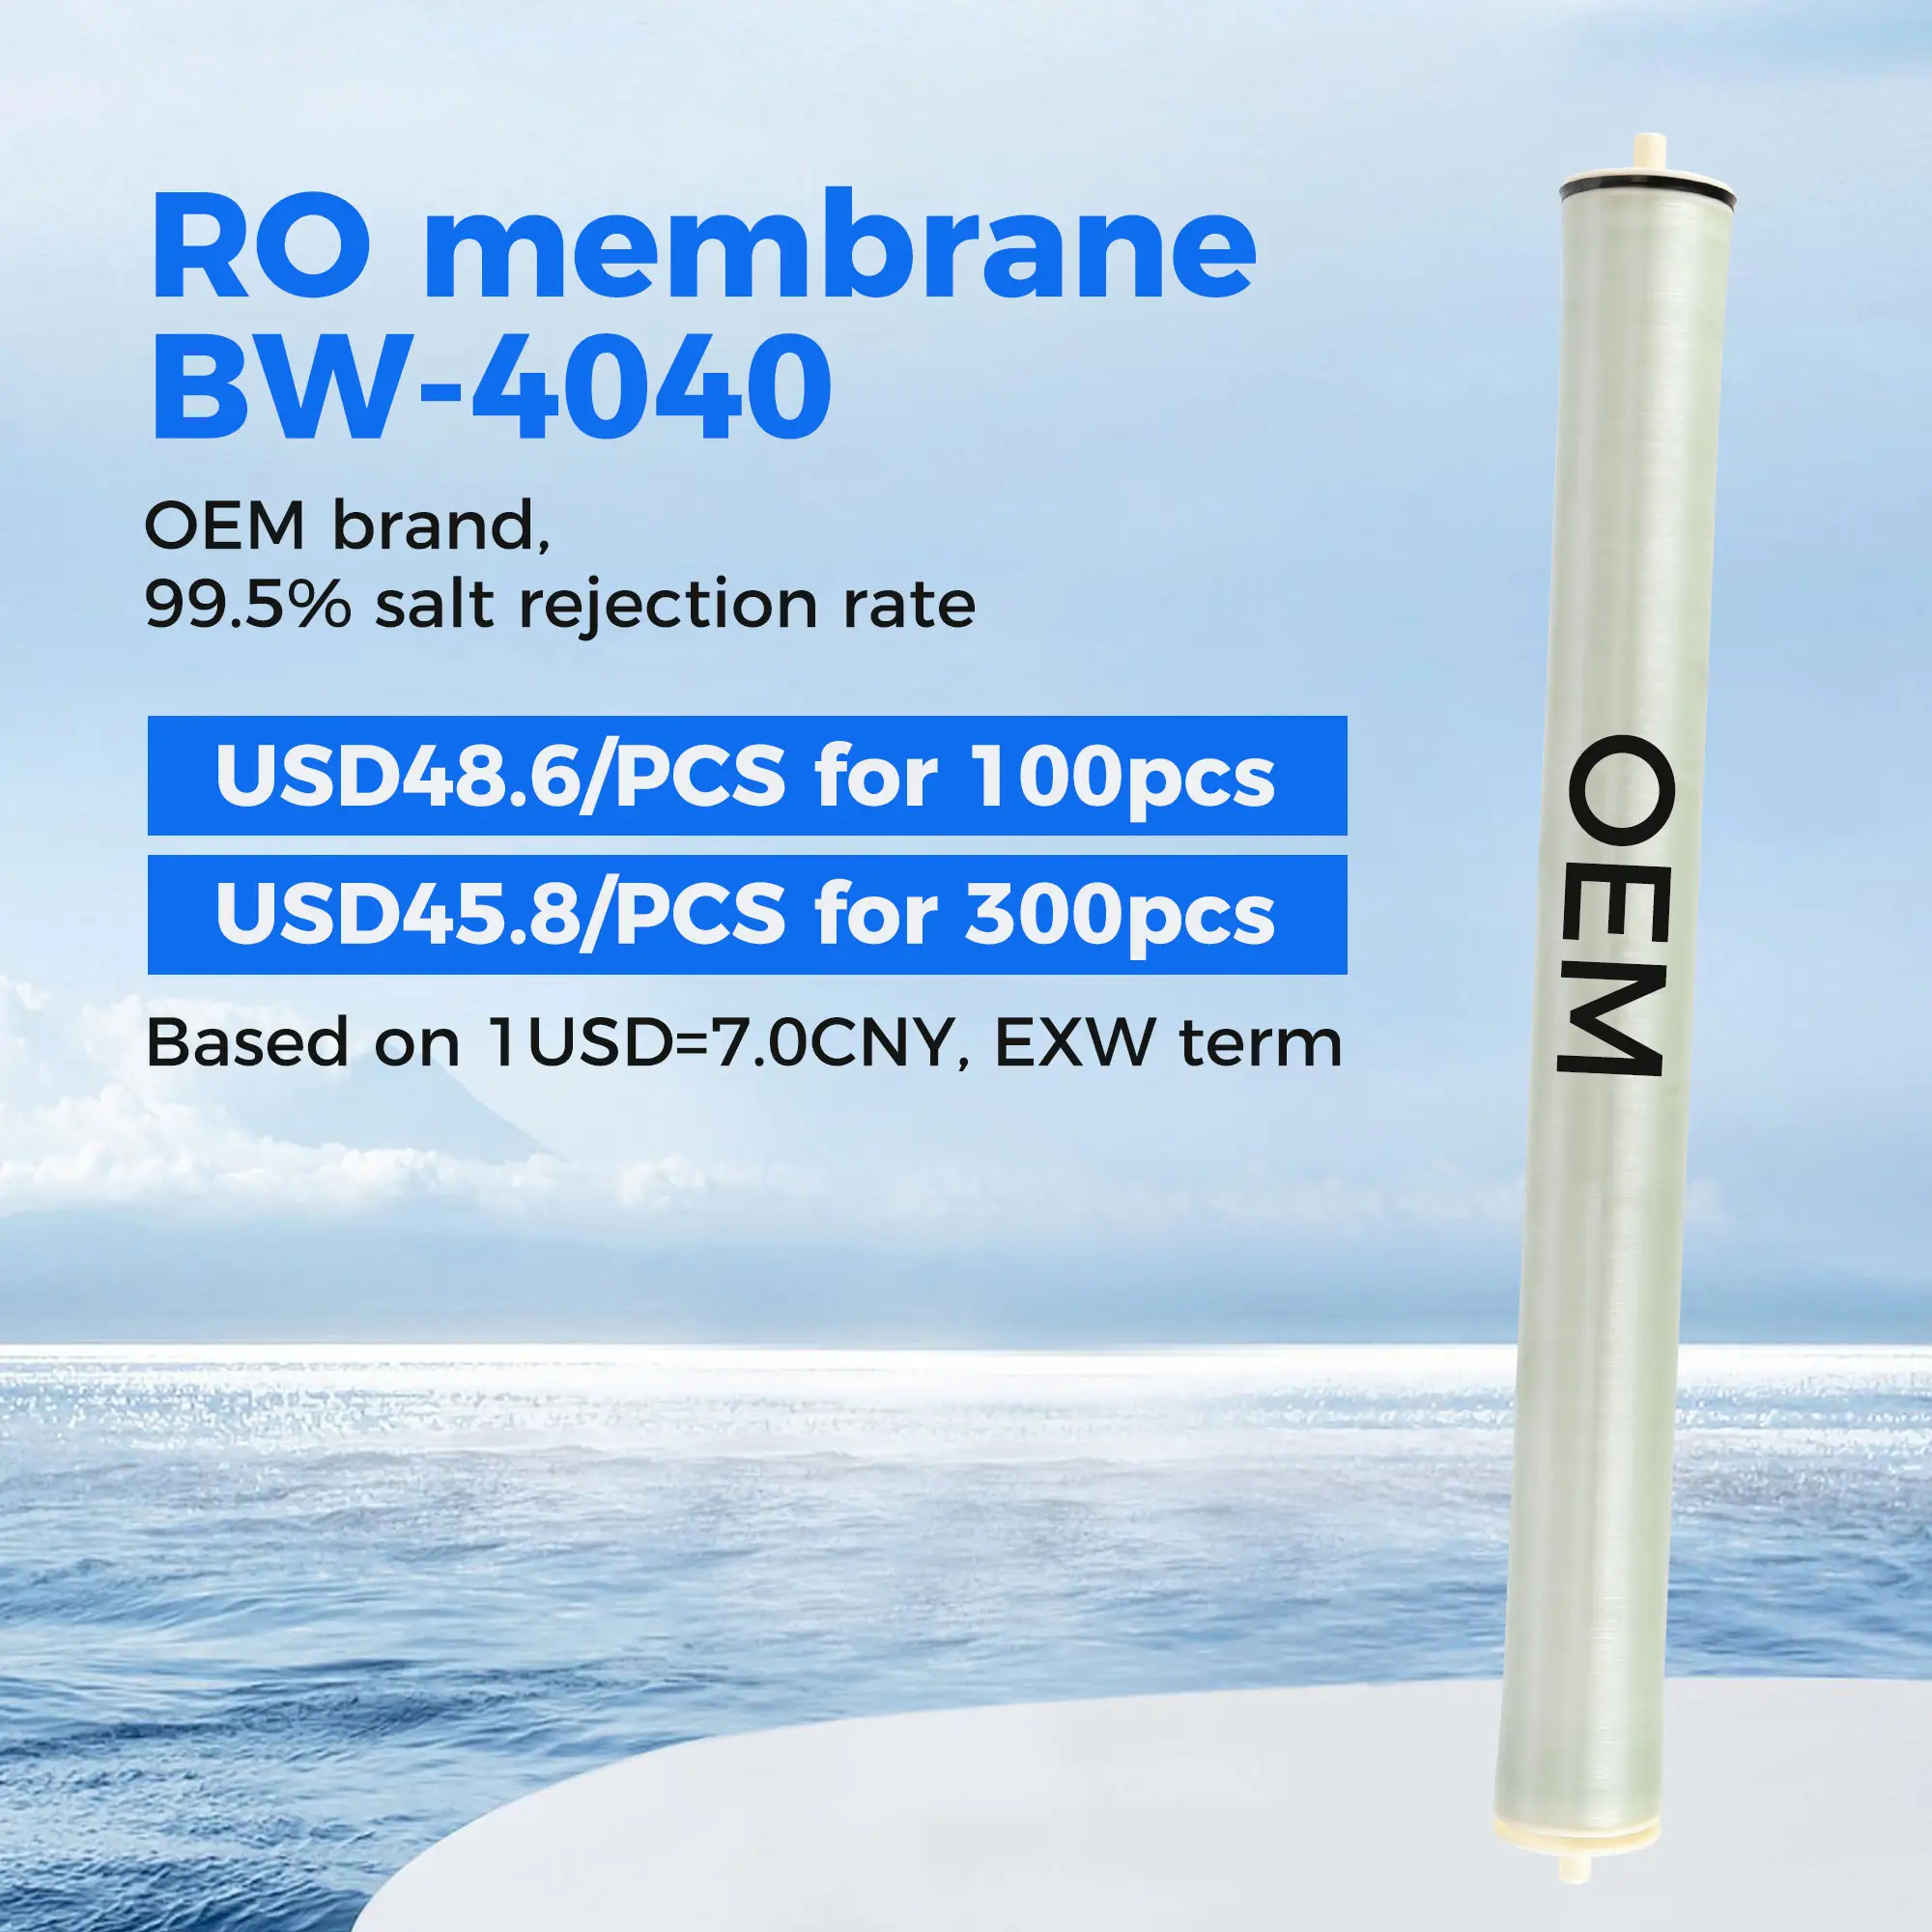 Membrana 4040 8040 do elemento RO de Osmose Reversa do principal fabricante do RO na China para o tratamento de água industrial